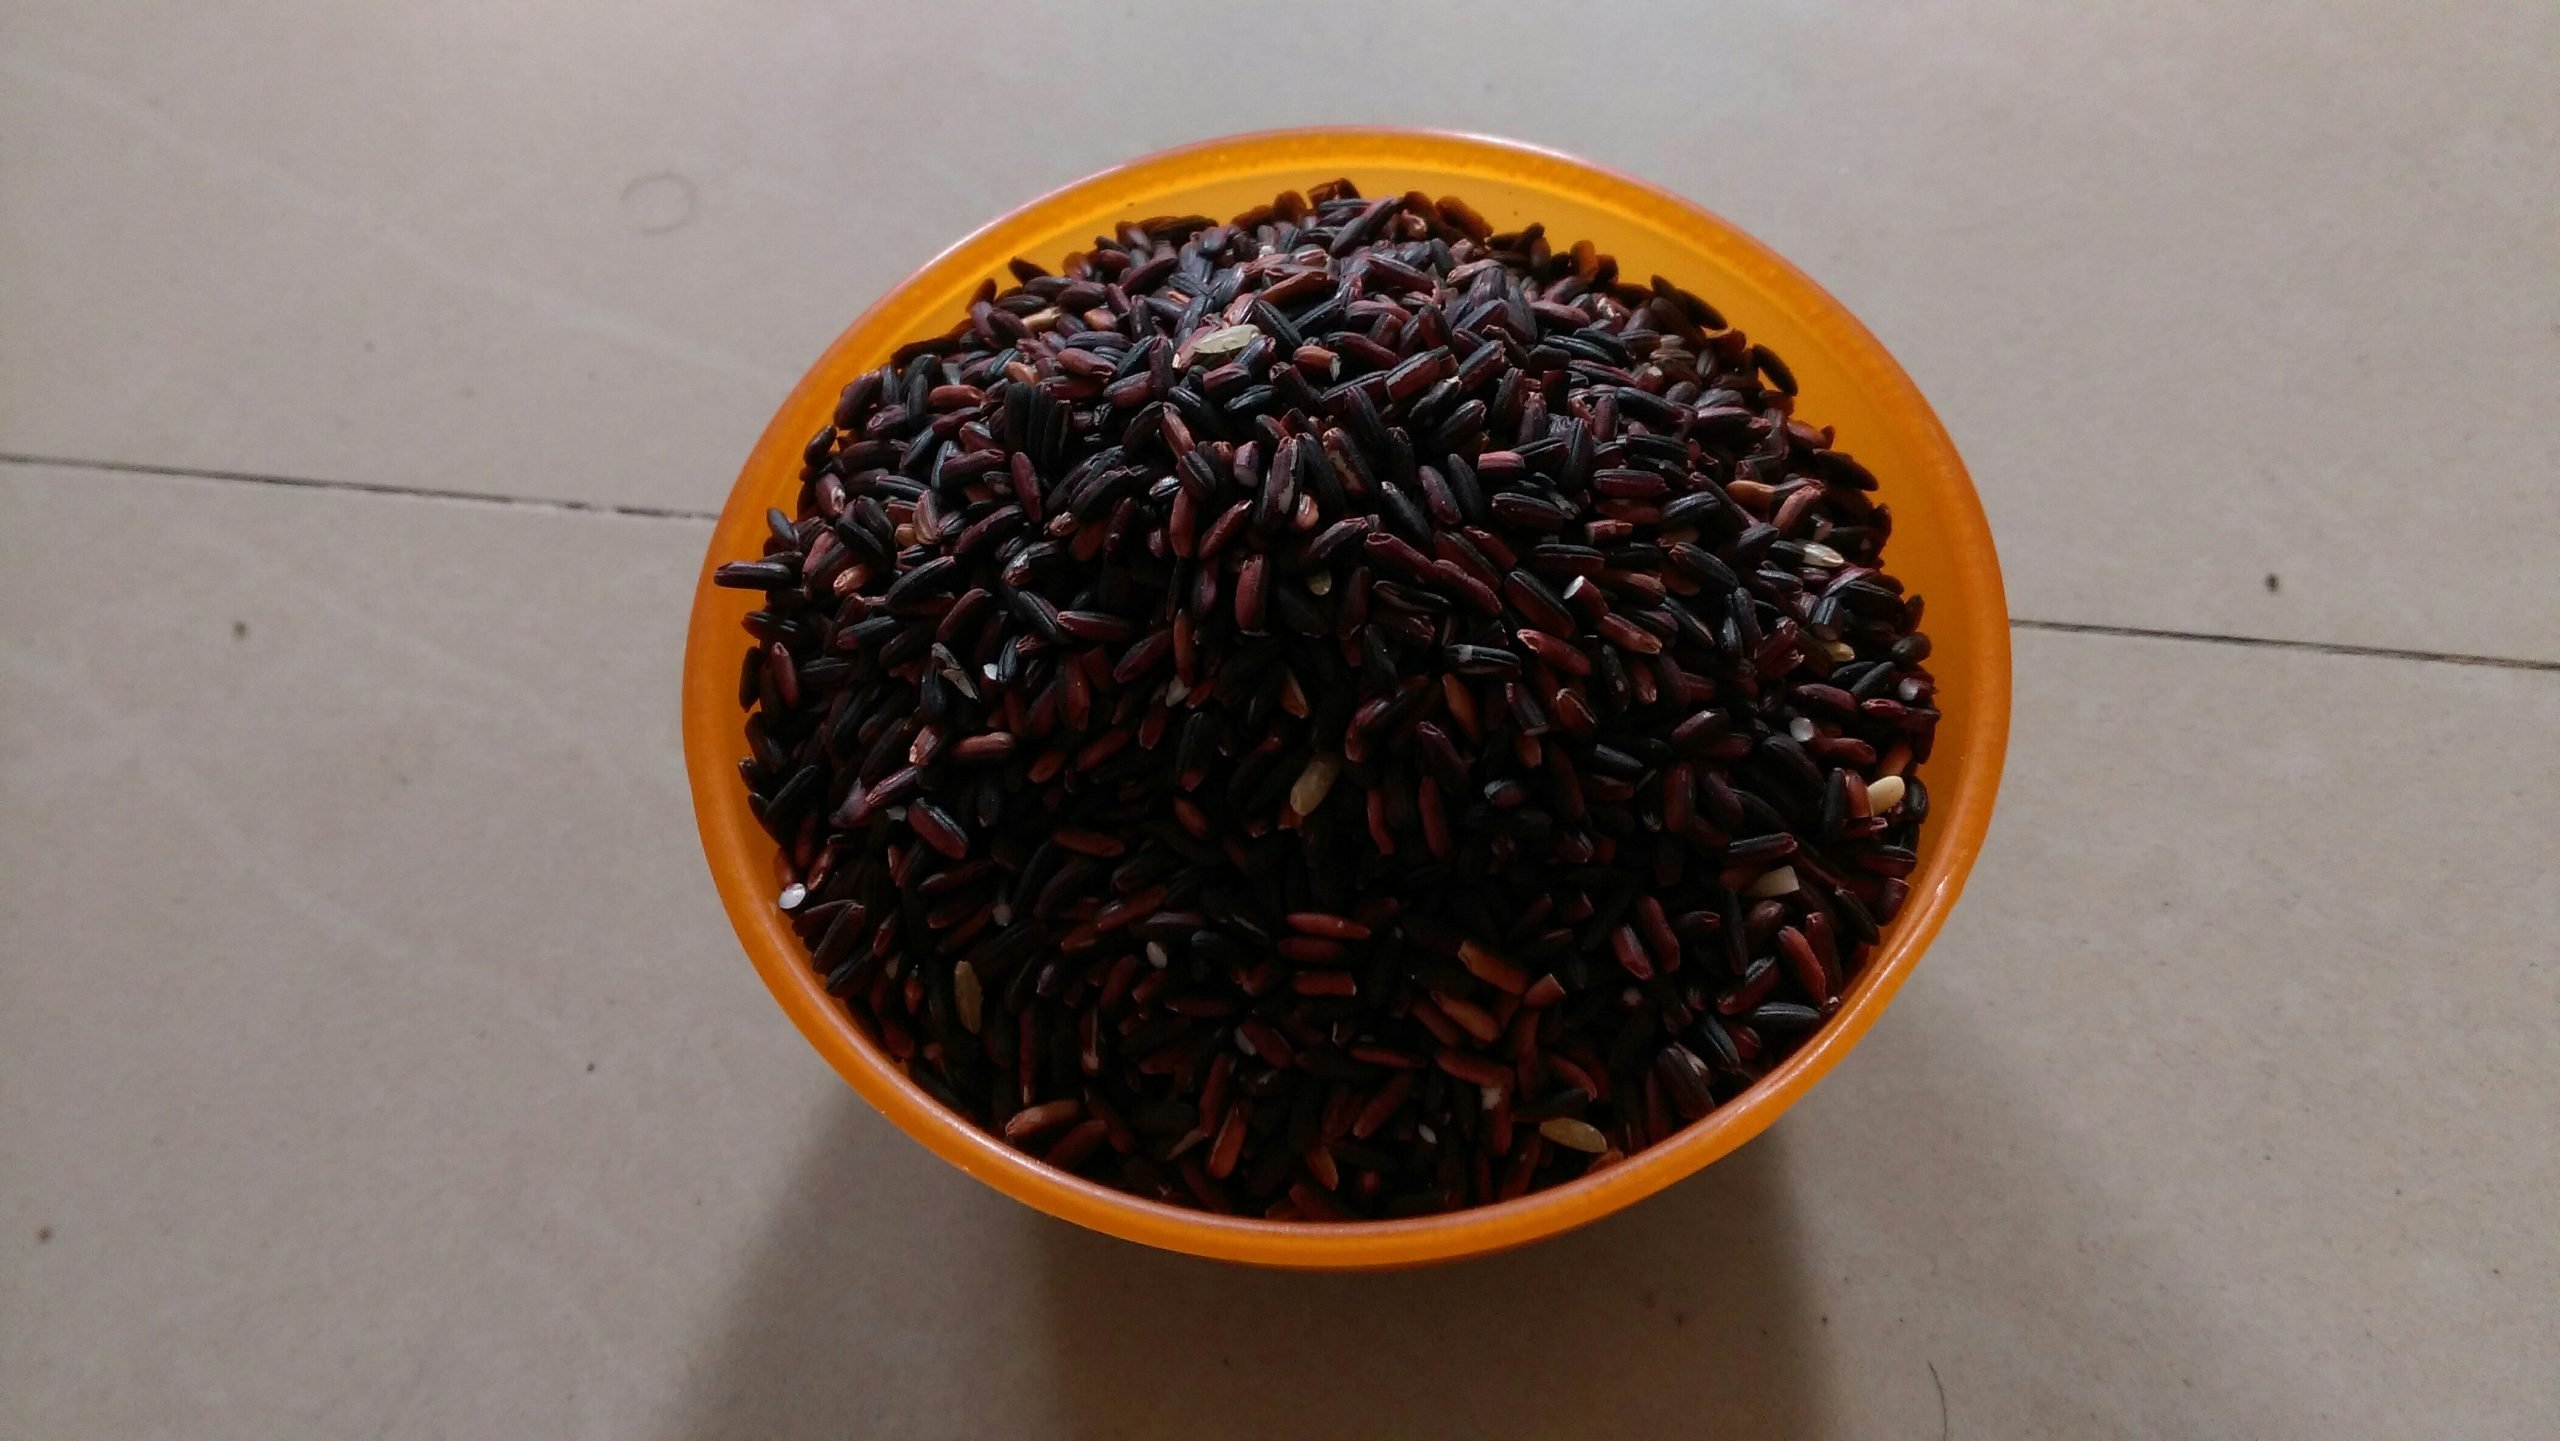 Black Rice at Rs 130/kilogram